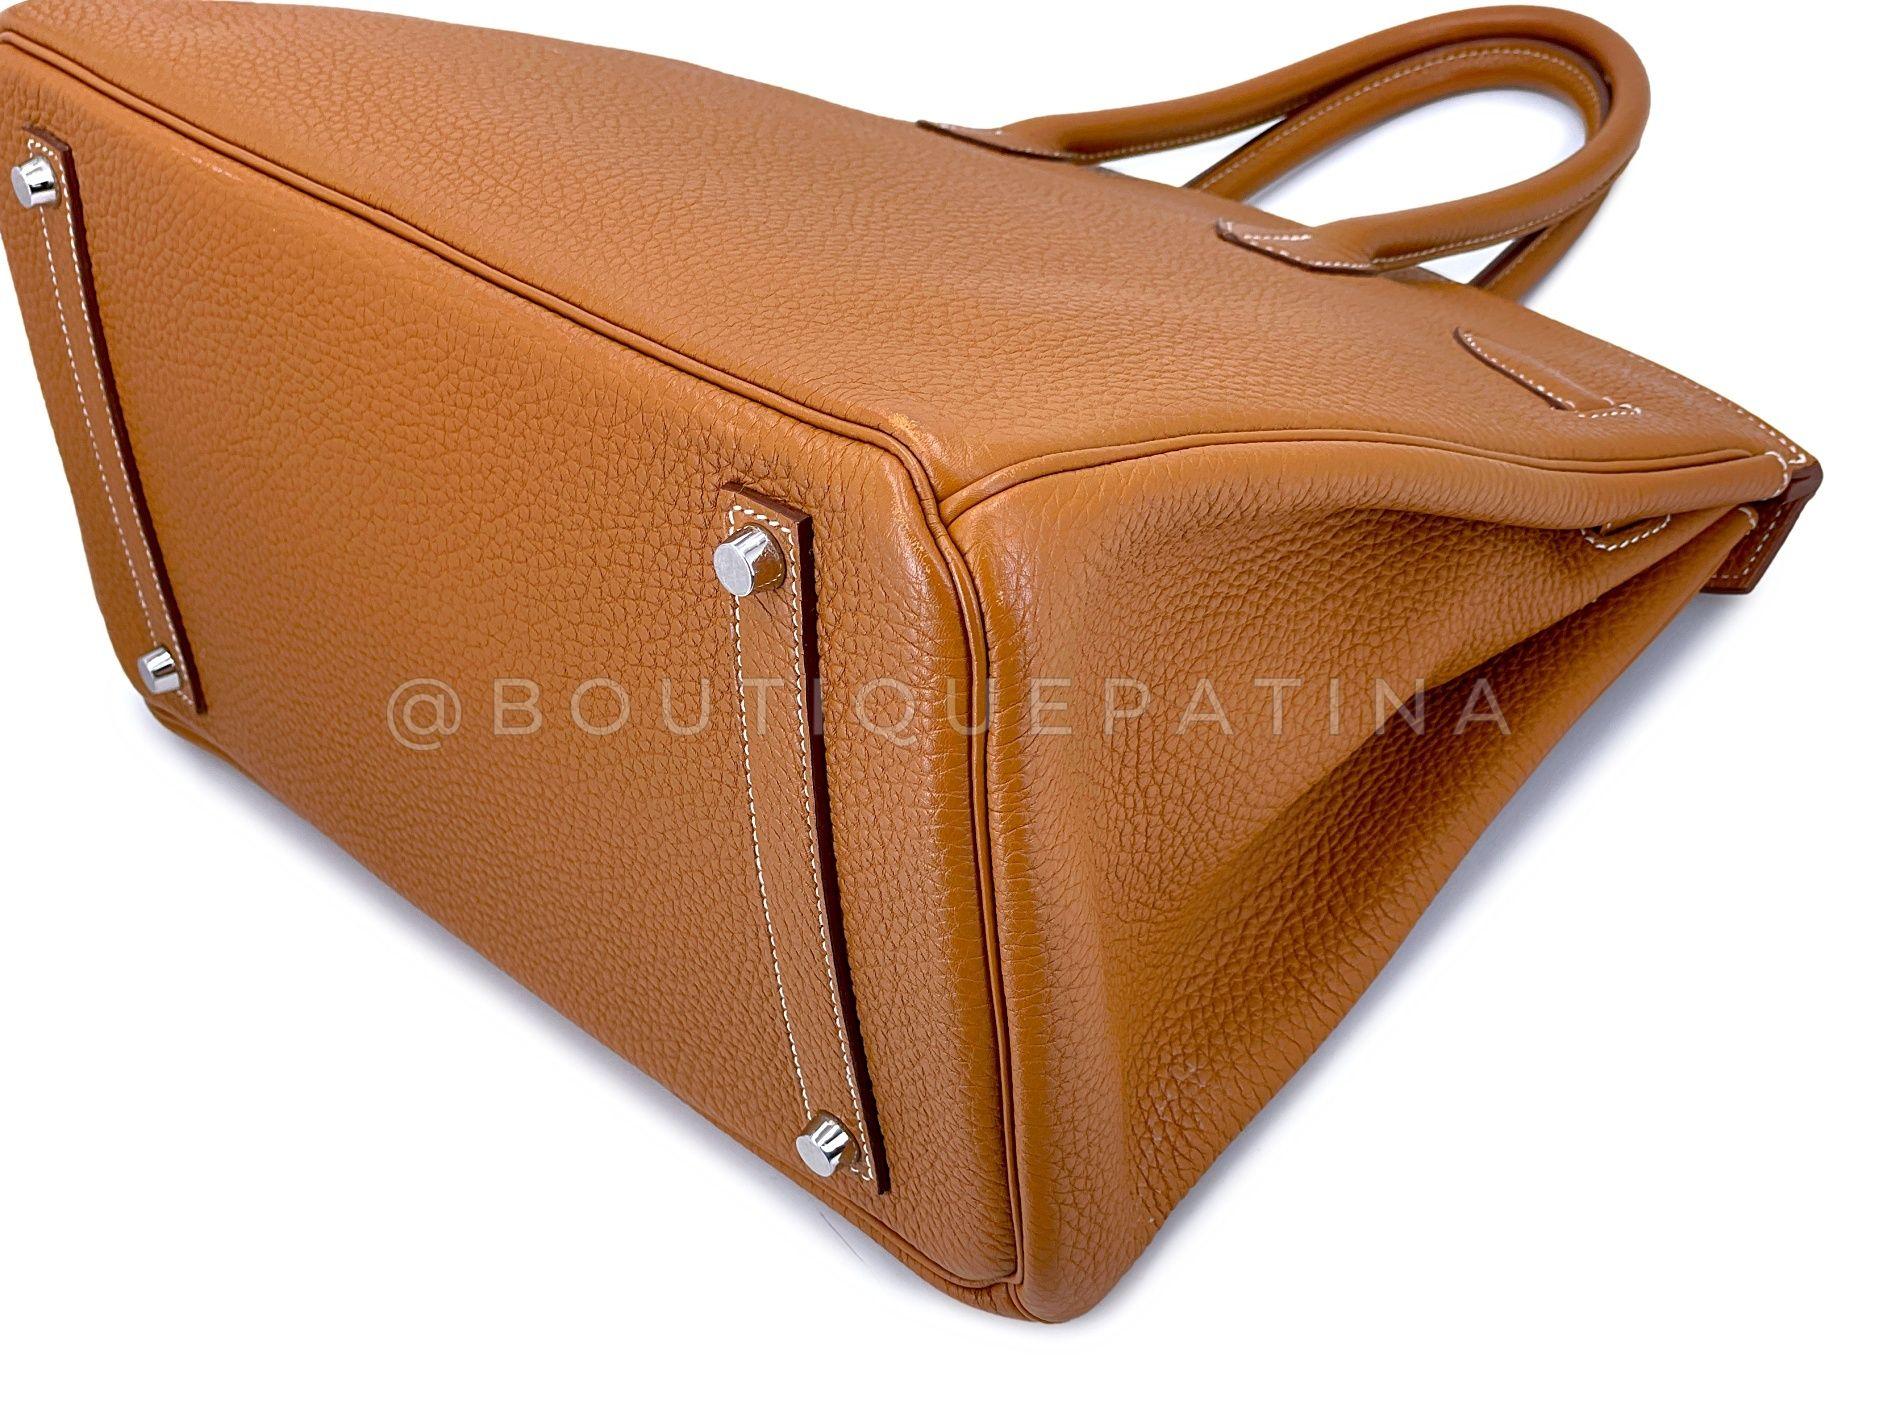 Hermès Gold Togo Birkin Tote Bag 35cm PHW Camel Brown 68060 For Sale 5